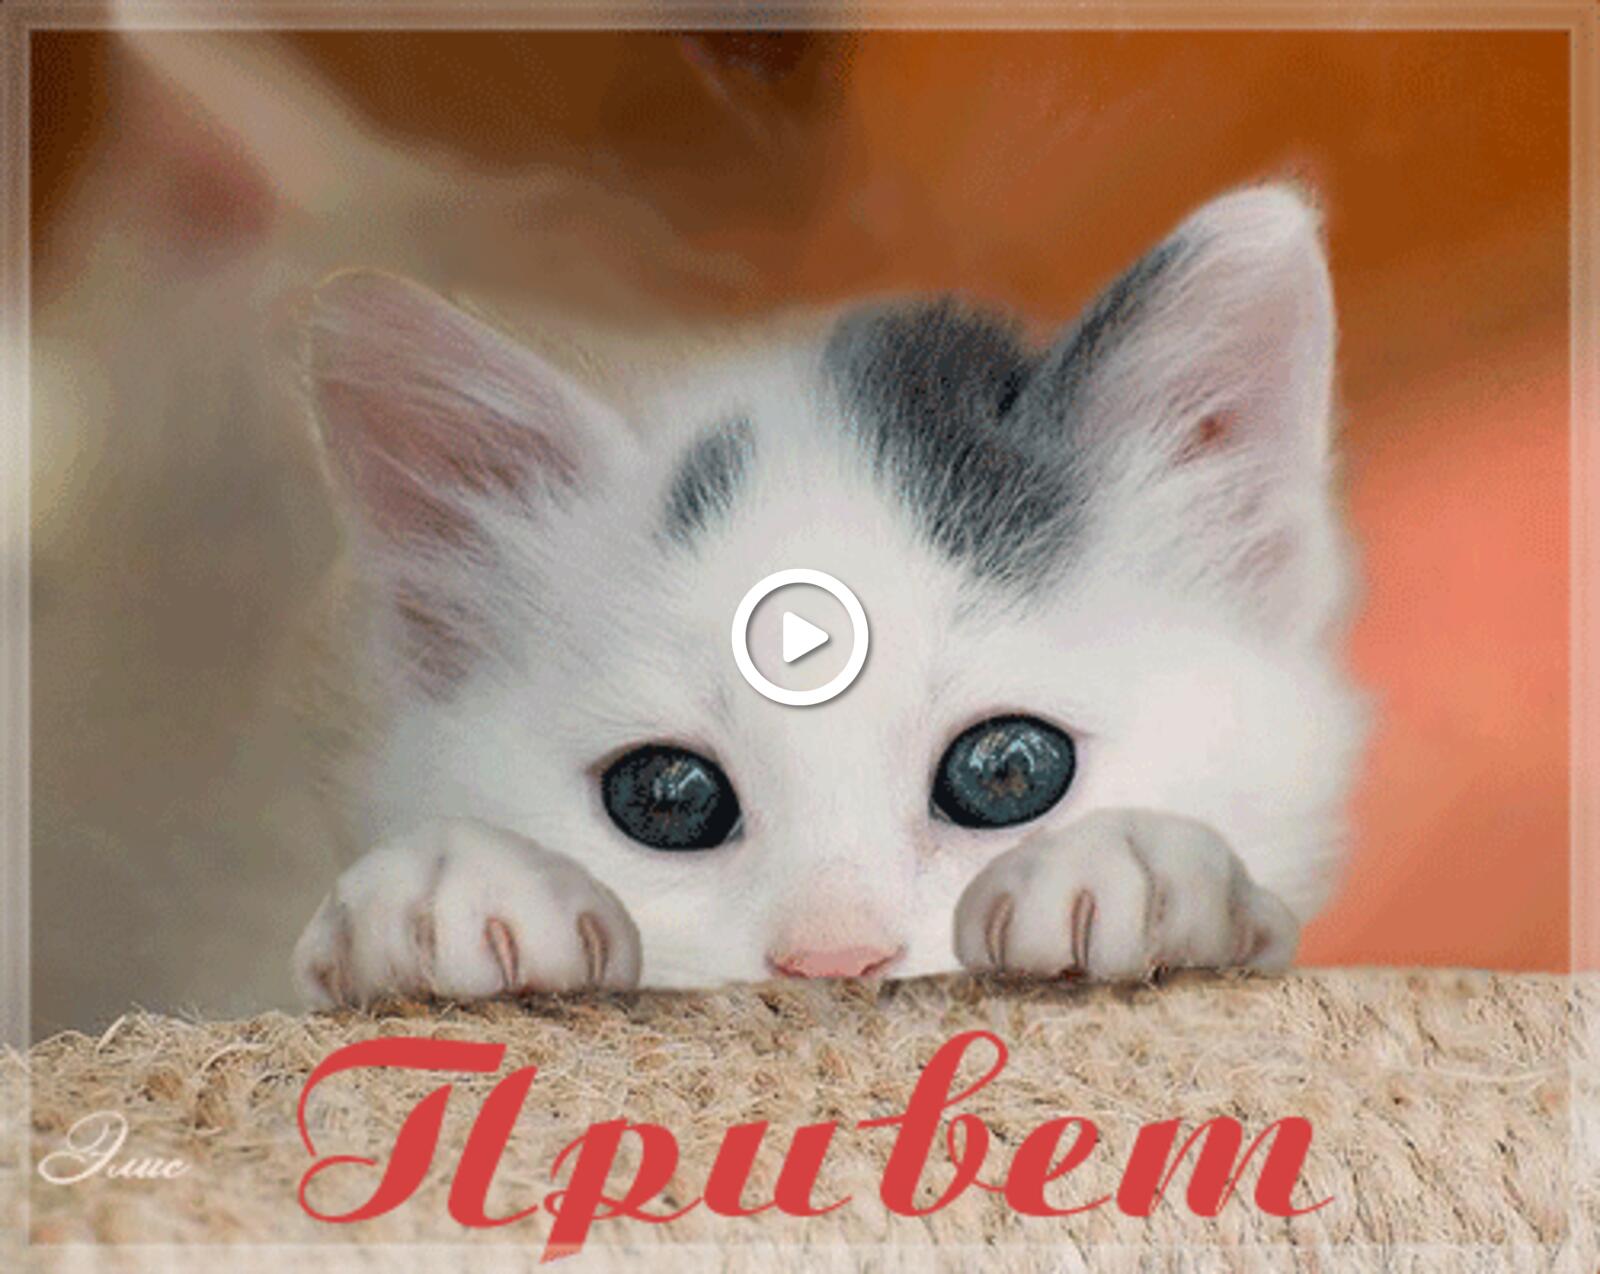 一张以嘻嘻哈哈的GIF很有趣 你好，图片，搞笑，美丽 猫咪为主题的明信片